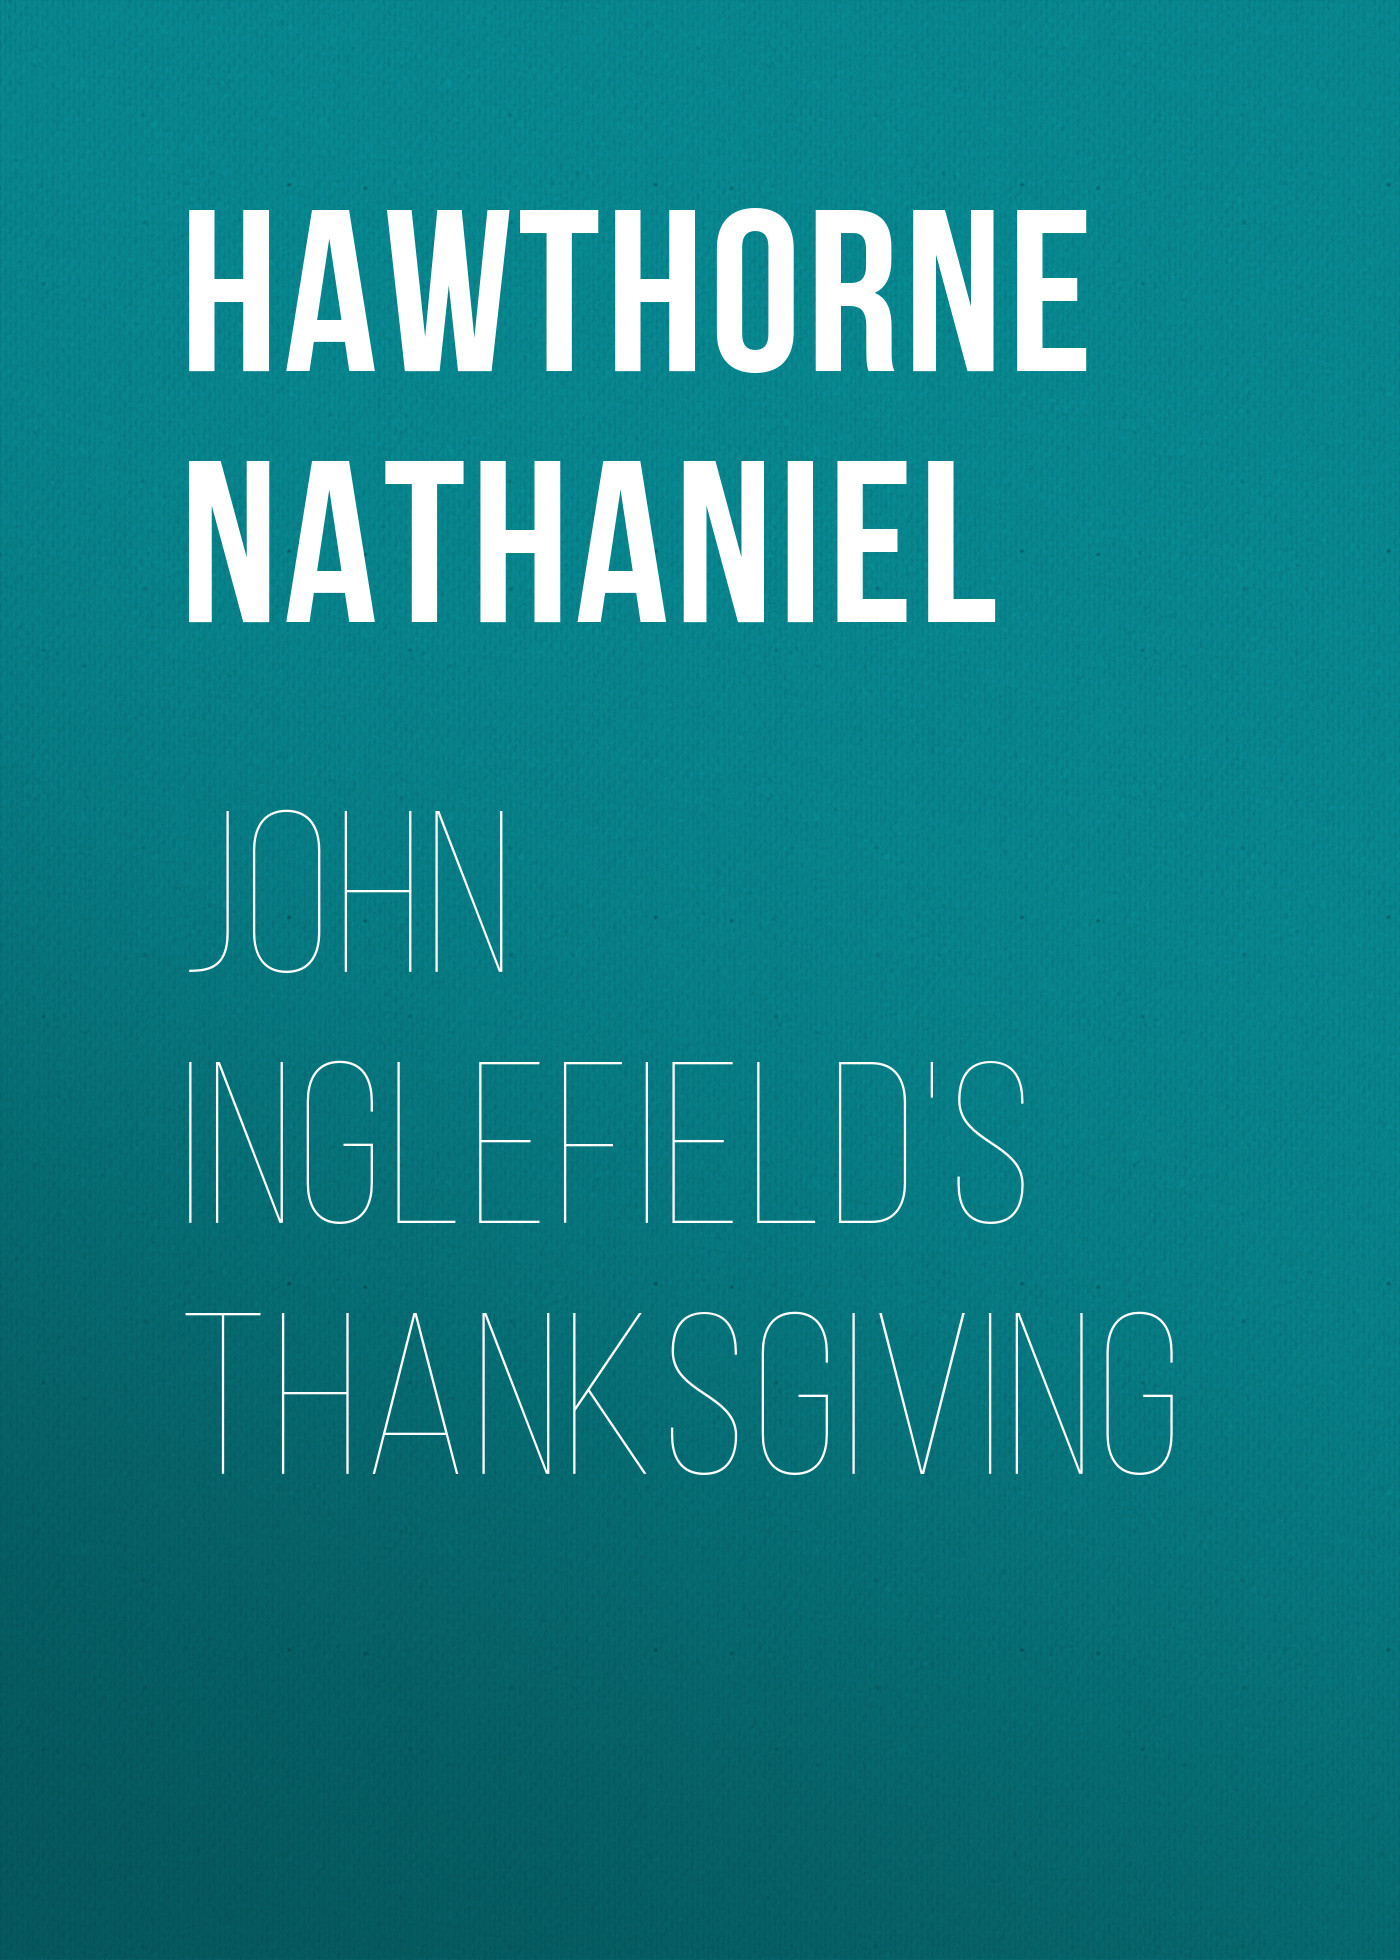 Книга John Inglefield's Thanksgiving из серии , созданная Nathaniel Hawthorne, может относится к жанру Литература 19 века, Зарубежная старинная литература, Зарубежная классика. Стоимость электронной книги John Inglefield's Thanksgiving с идентификатором 25559740 составляет 0 руб.